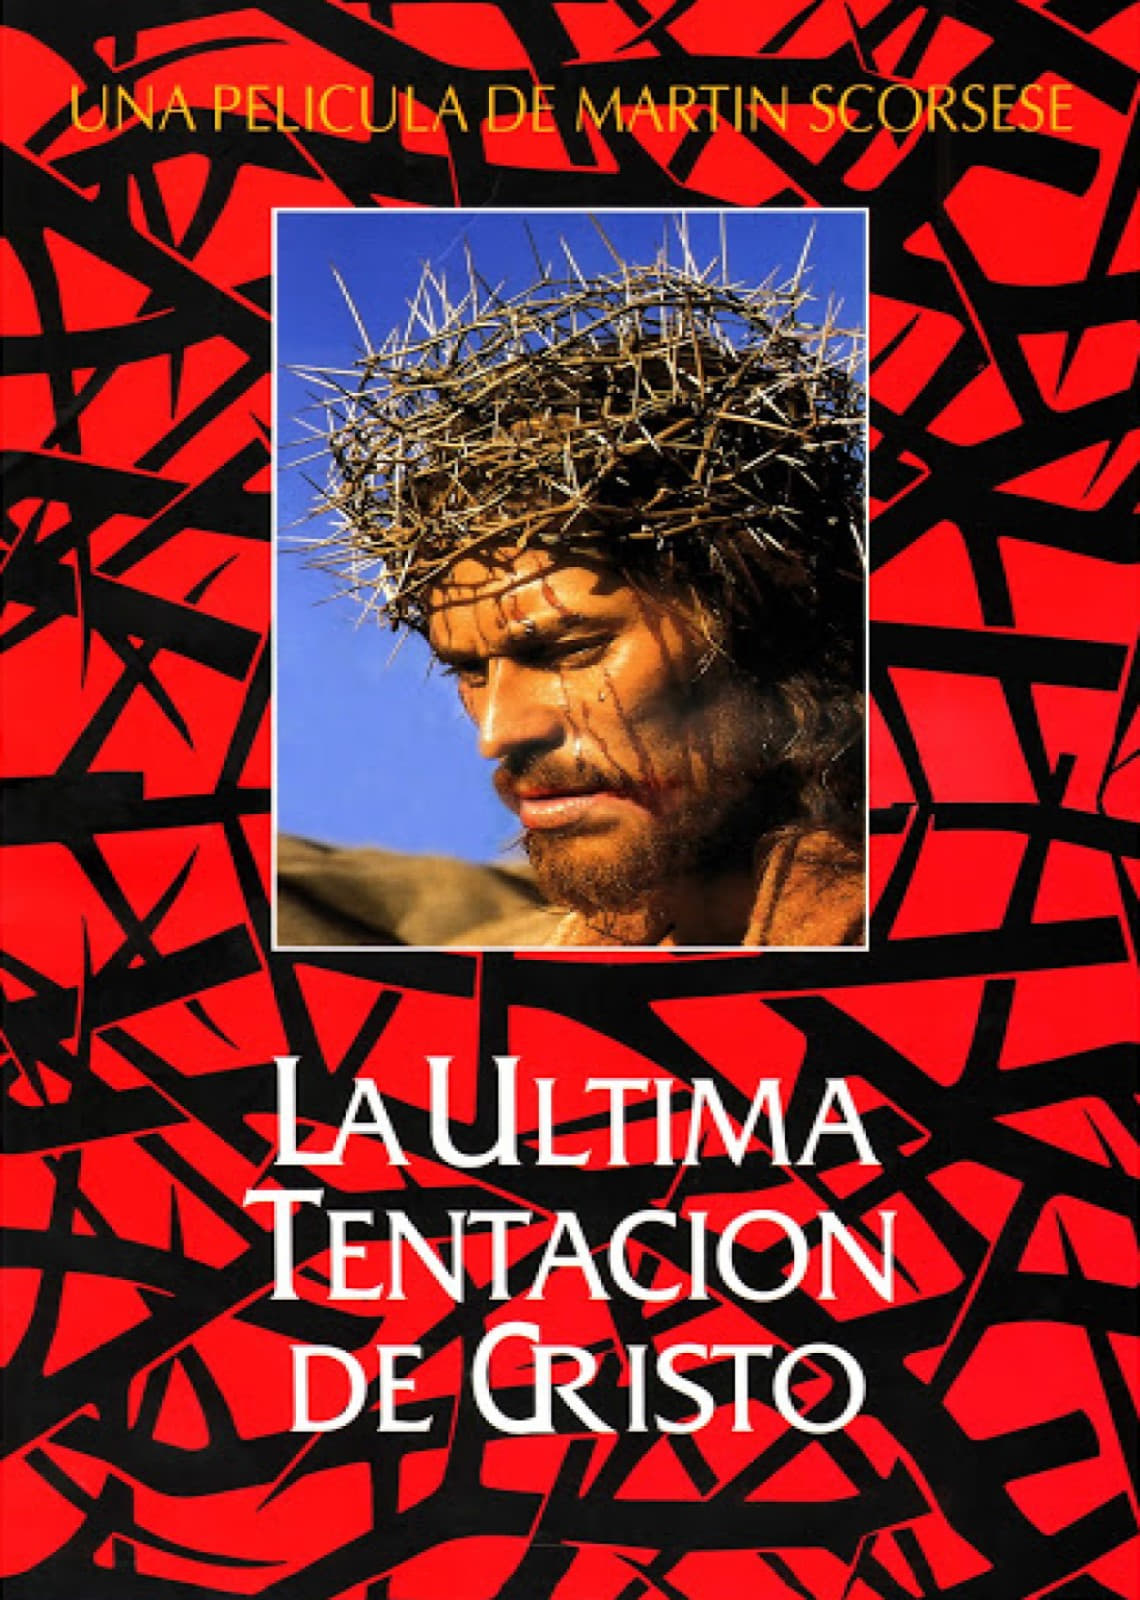 La última tentación de Cristo (1988) - Posters — The Movie Database (TMDB)